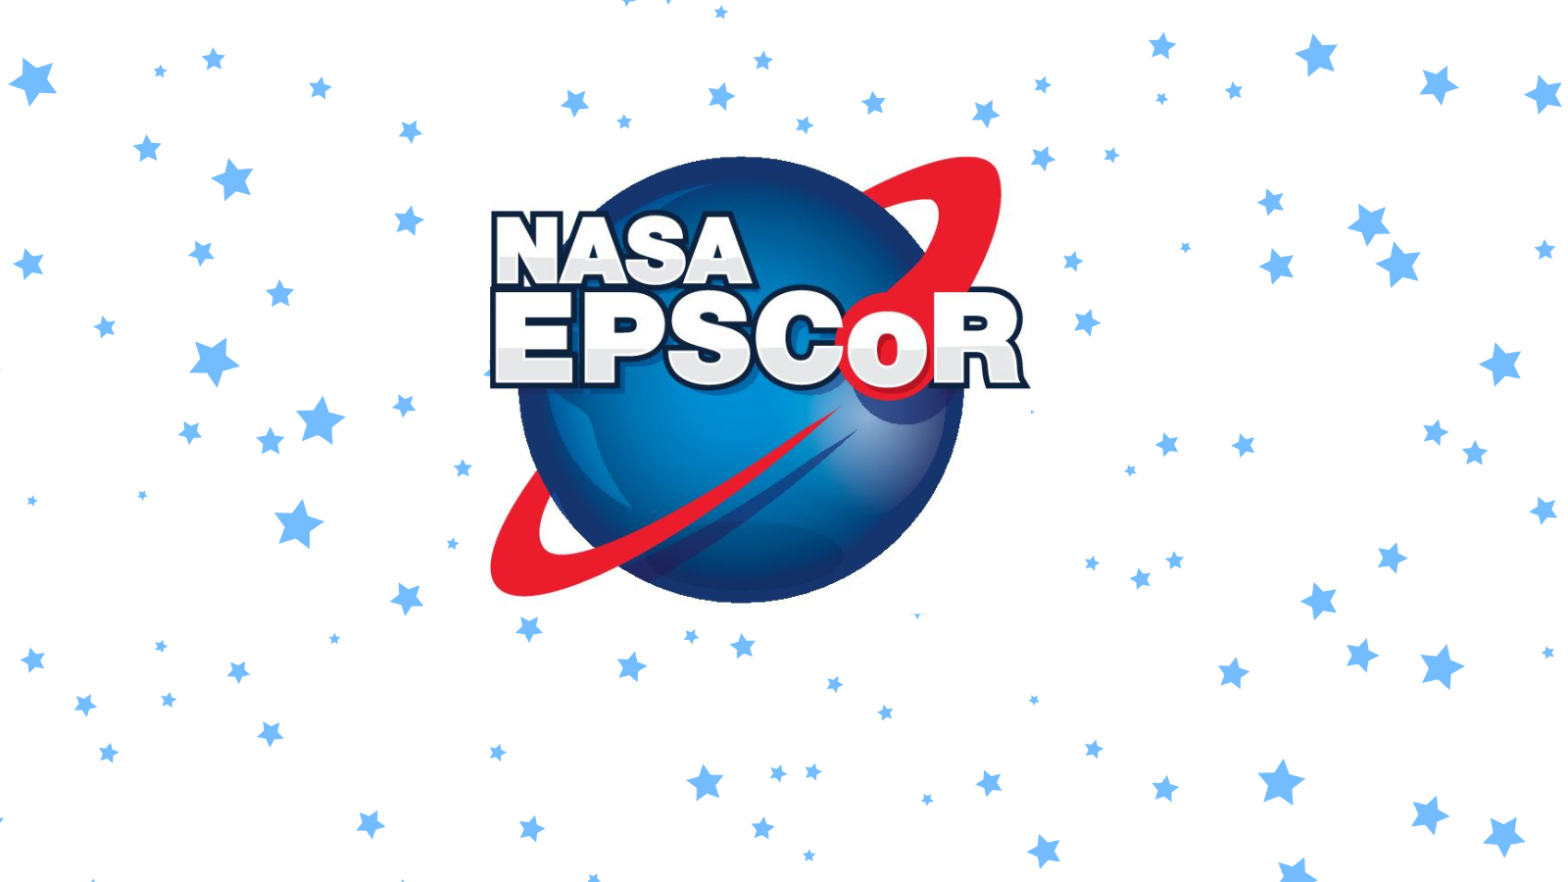 Nasa Epscor Banner (1)